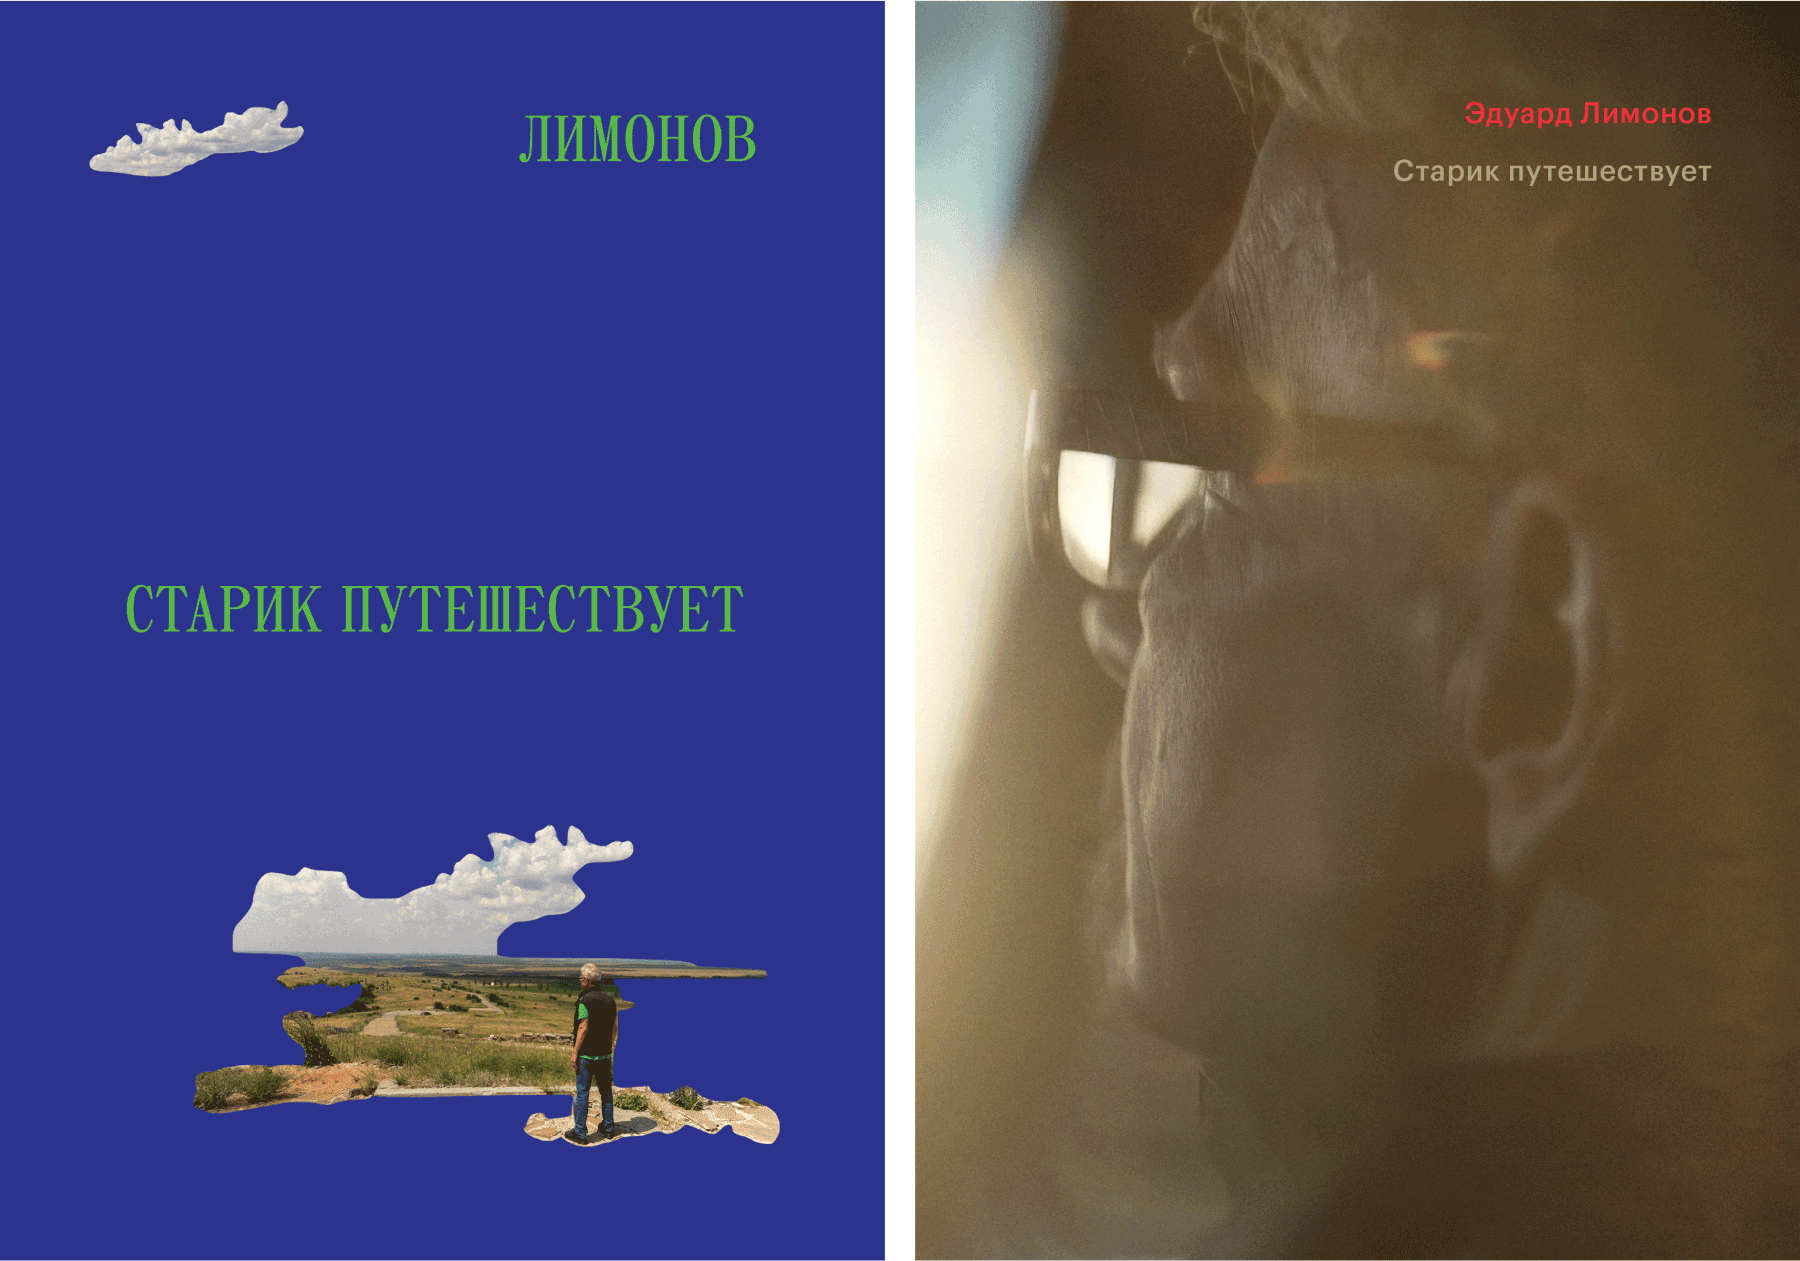 Несколько вариантов обложки для книги Эдуарда Лимонова «Старик путешествует», на которых использованы кадры из документального фильма о писателе